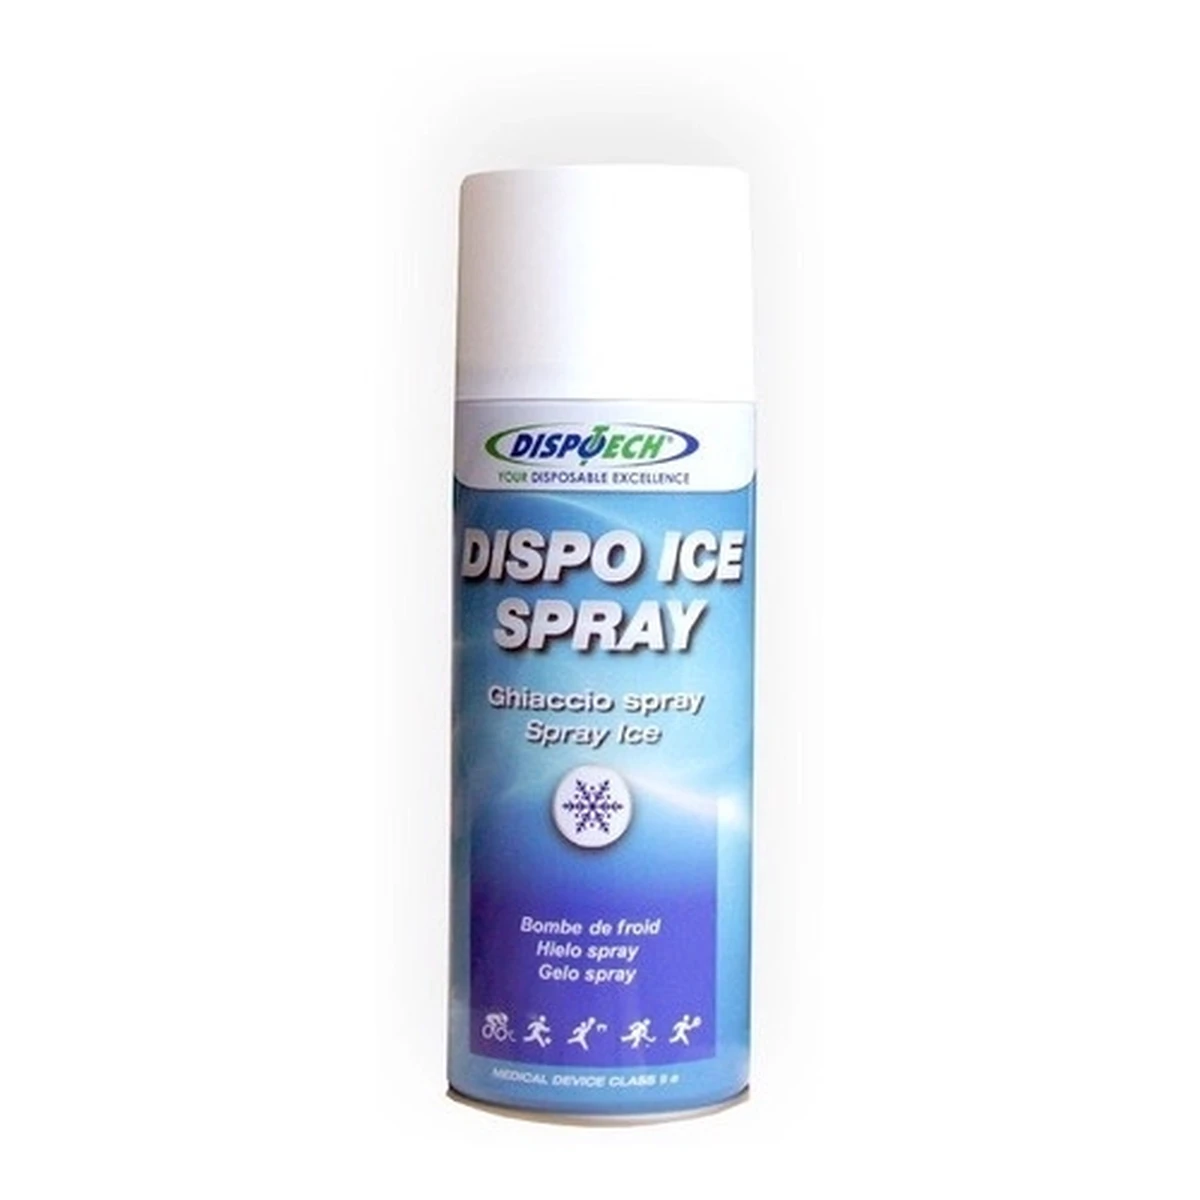 Foto do produto Spray de Gelo Dispo Ice Dispotech